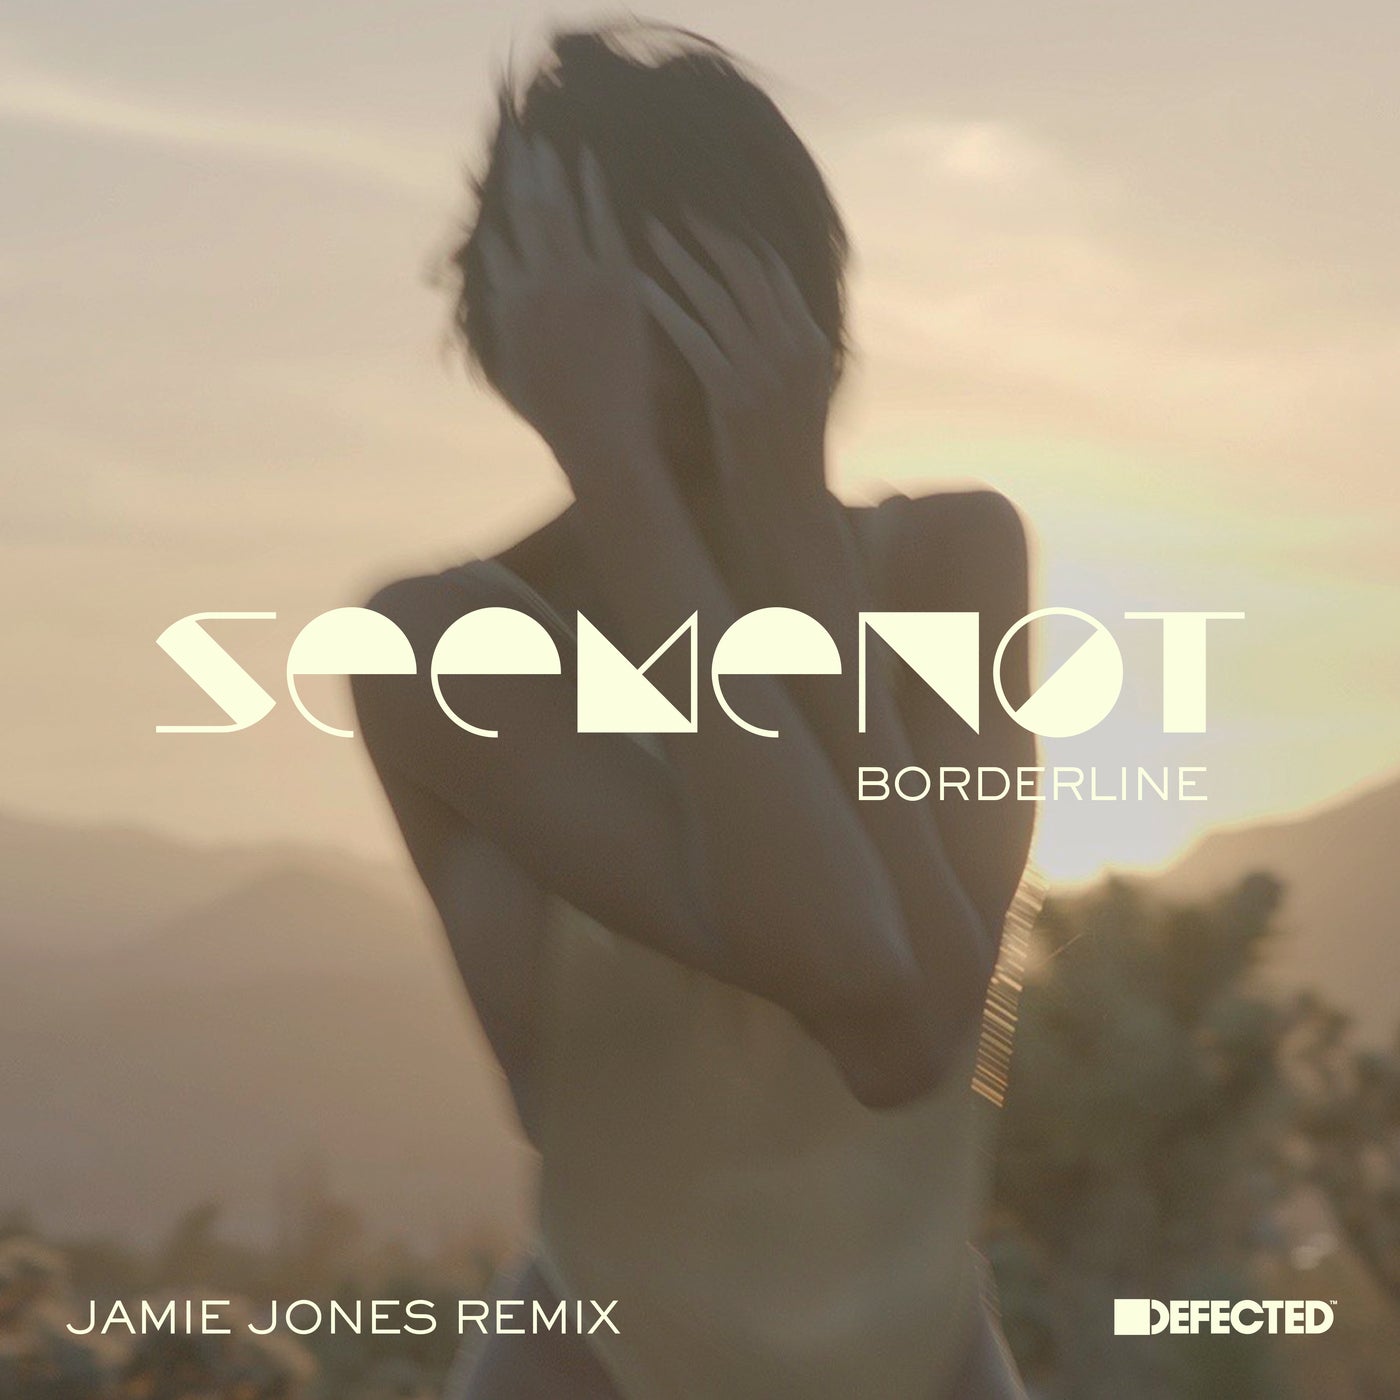 Borderline - Jamie Jones Remix